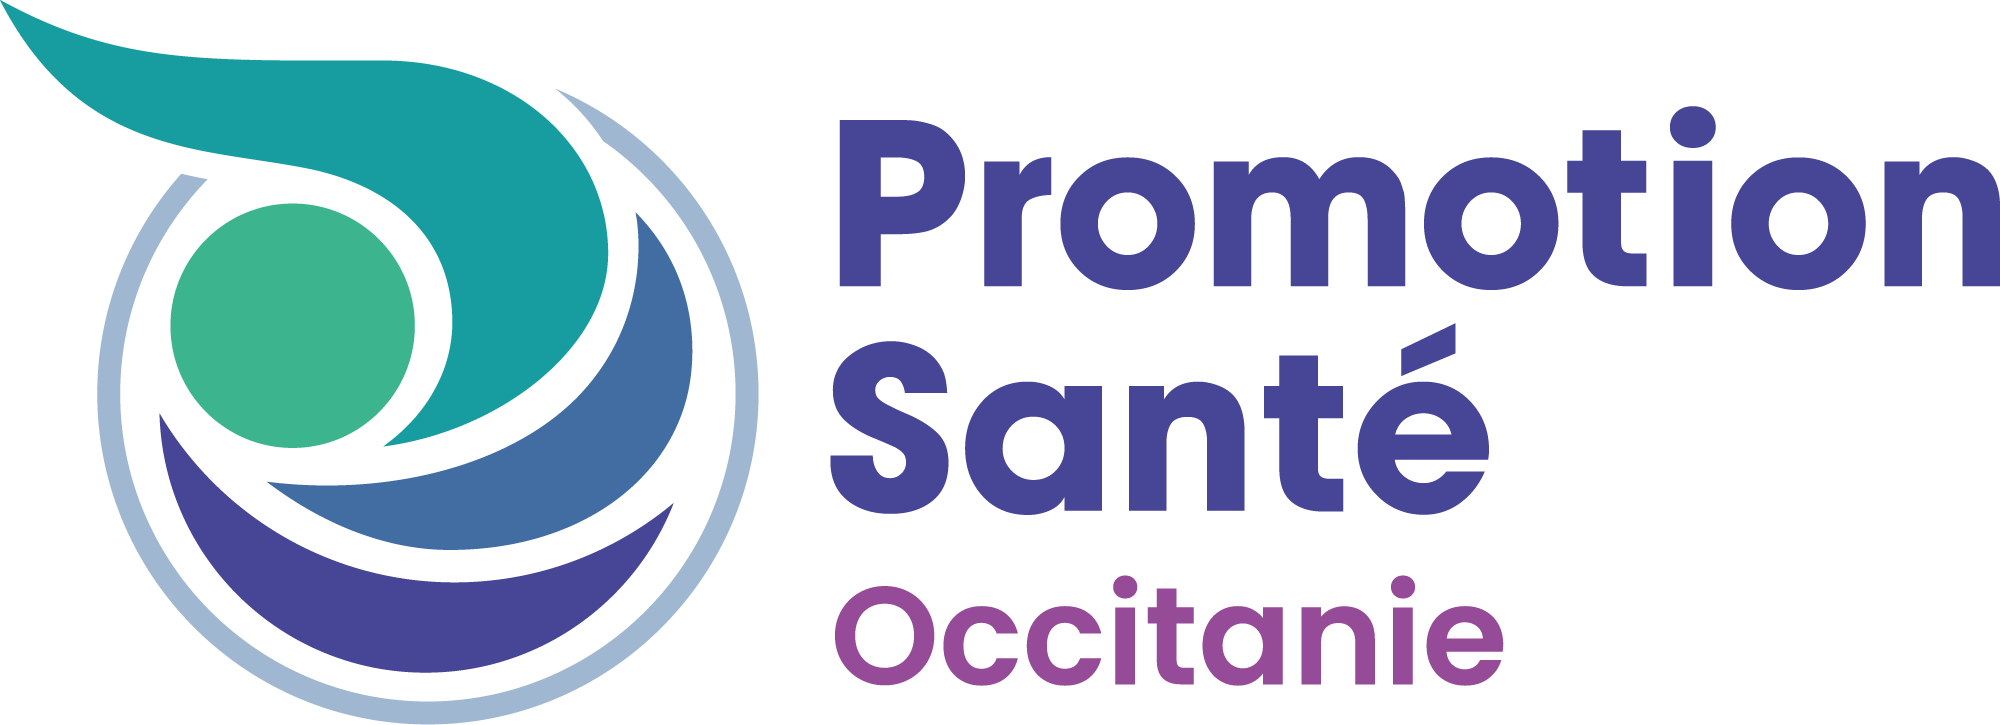 Promotion Santé Occitanie, client Opentime